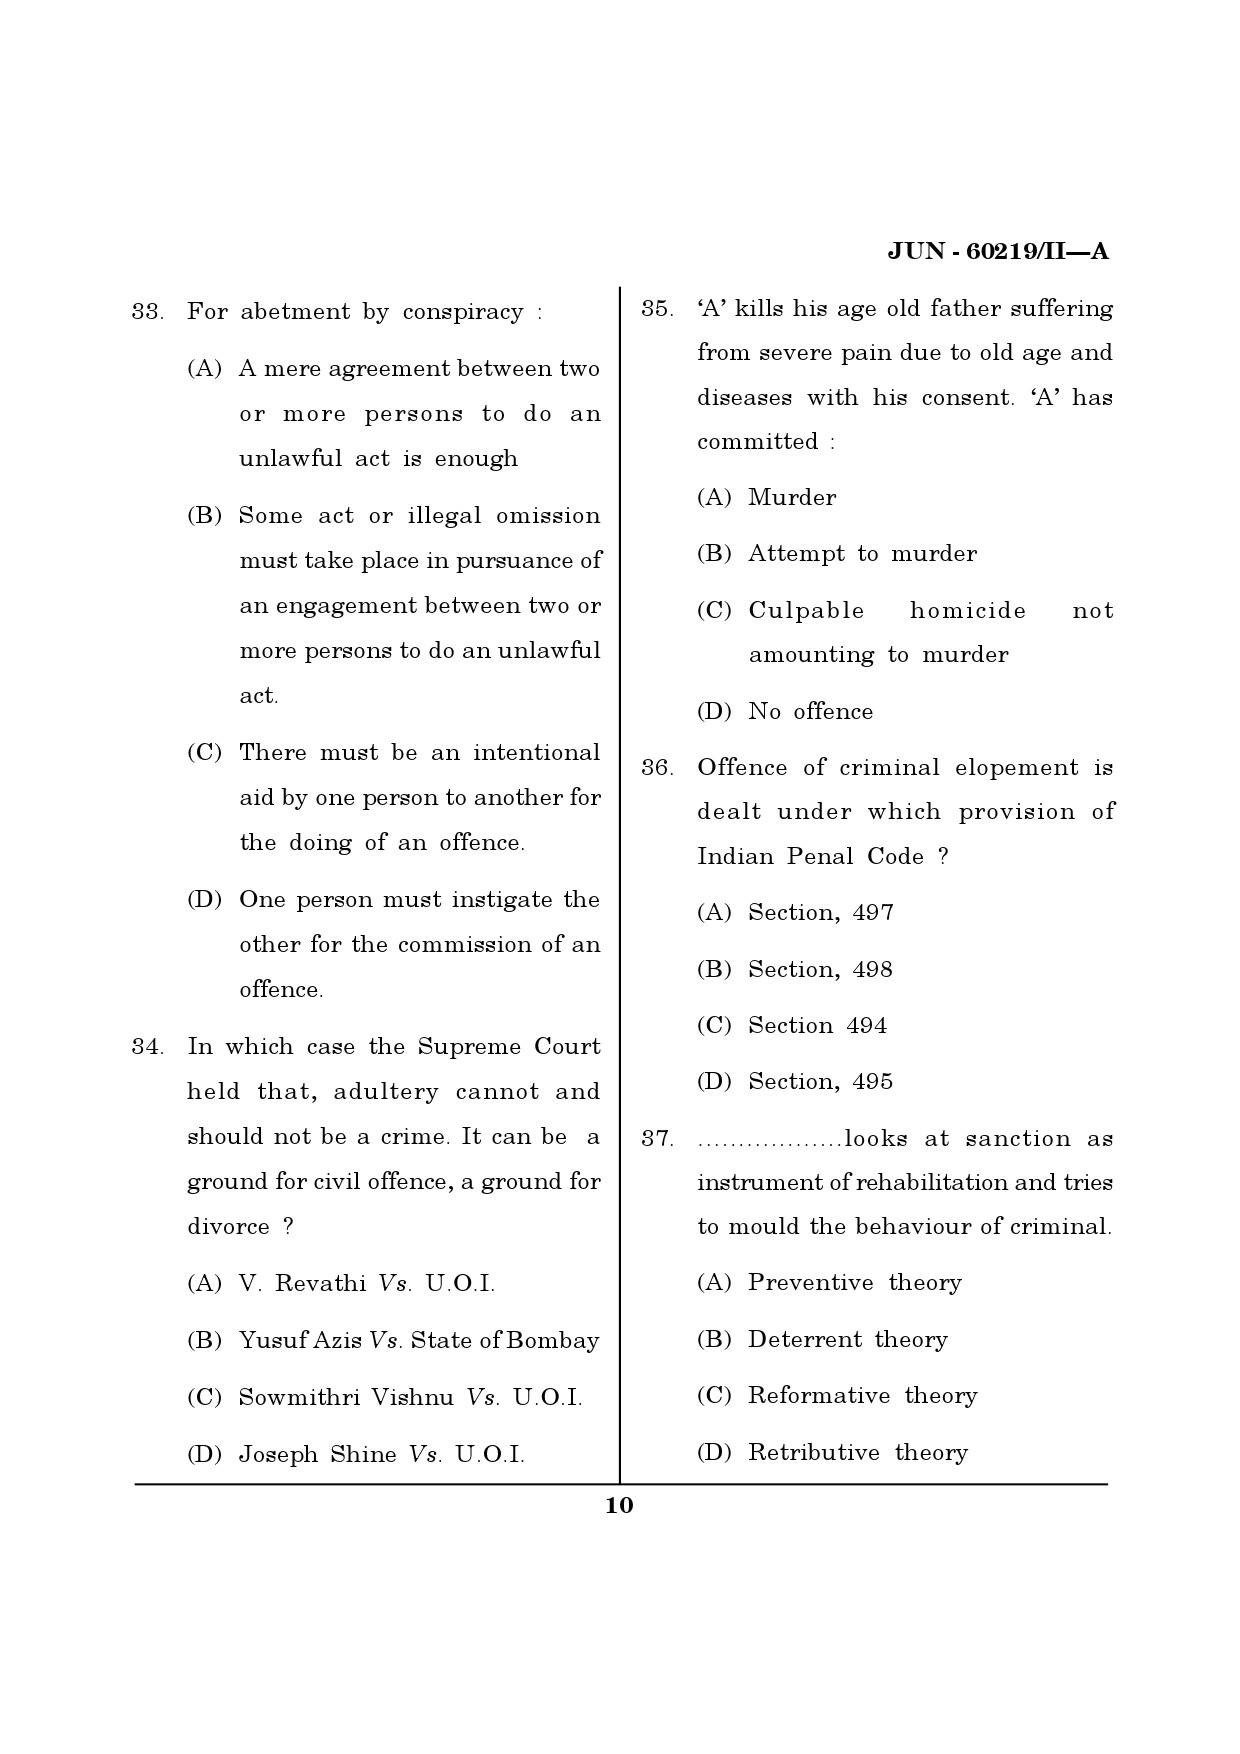 Maharashtra SET Law Question Paper II June 2019 9